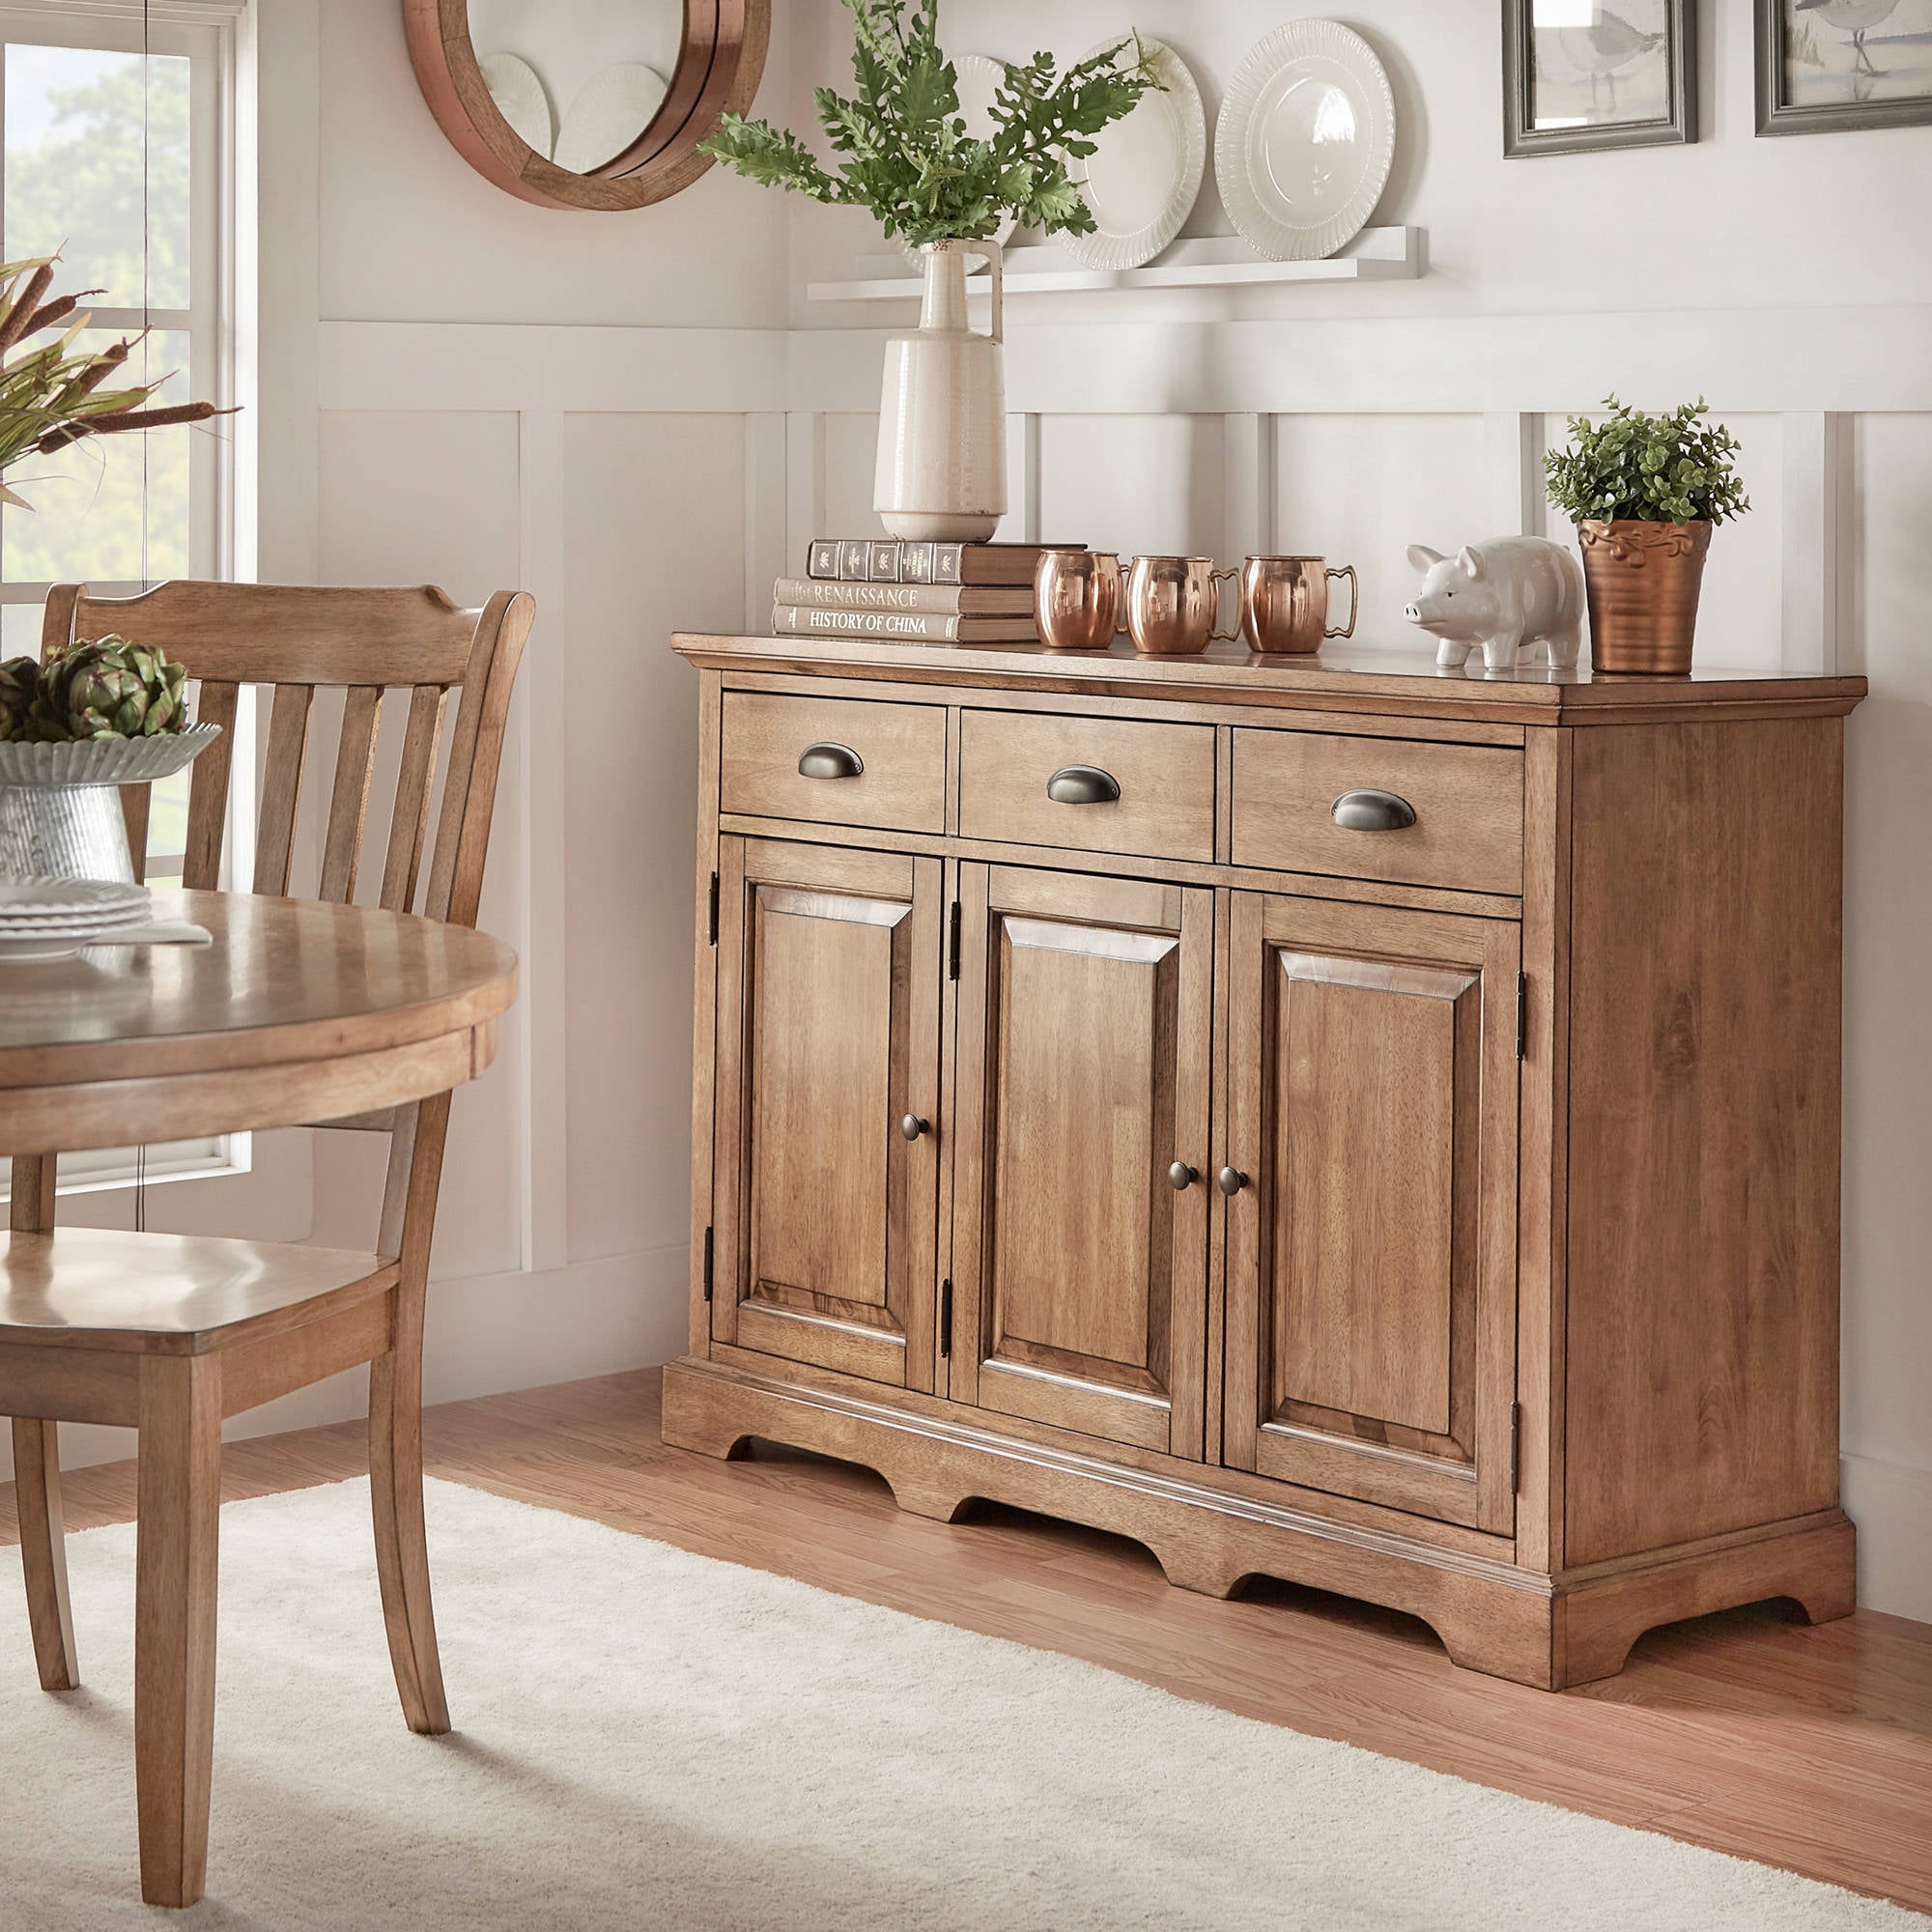 weston-home-oak-top-kitchen-cabinet-buffet-sideboard-oak-finish